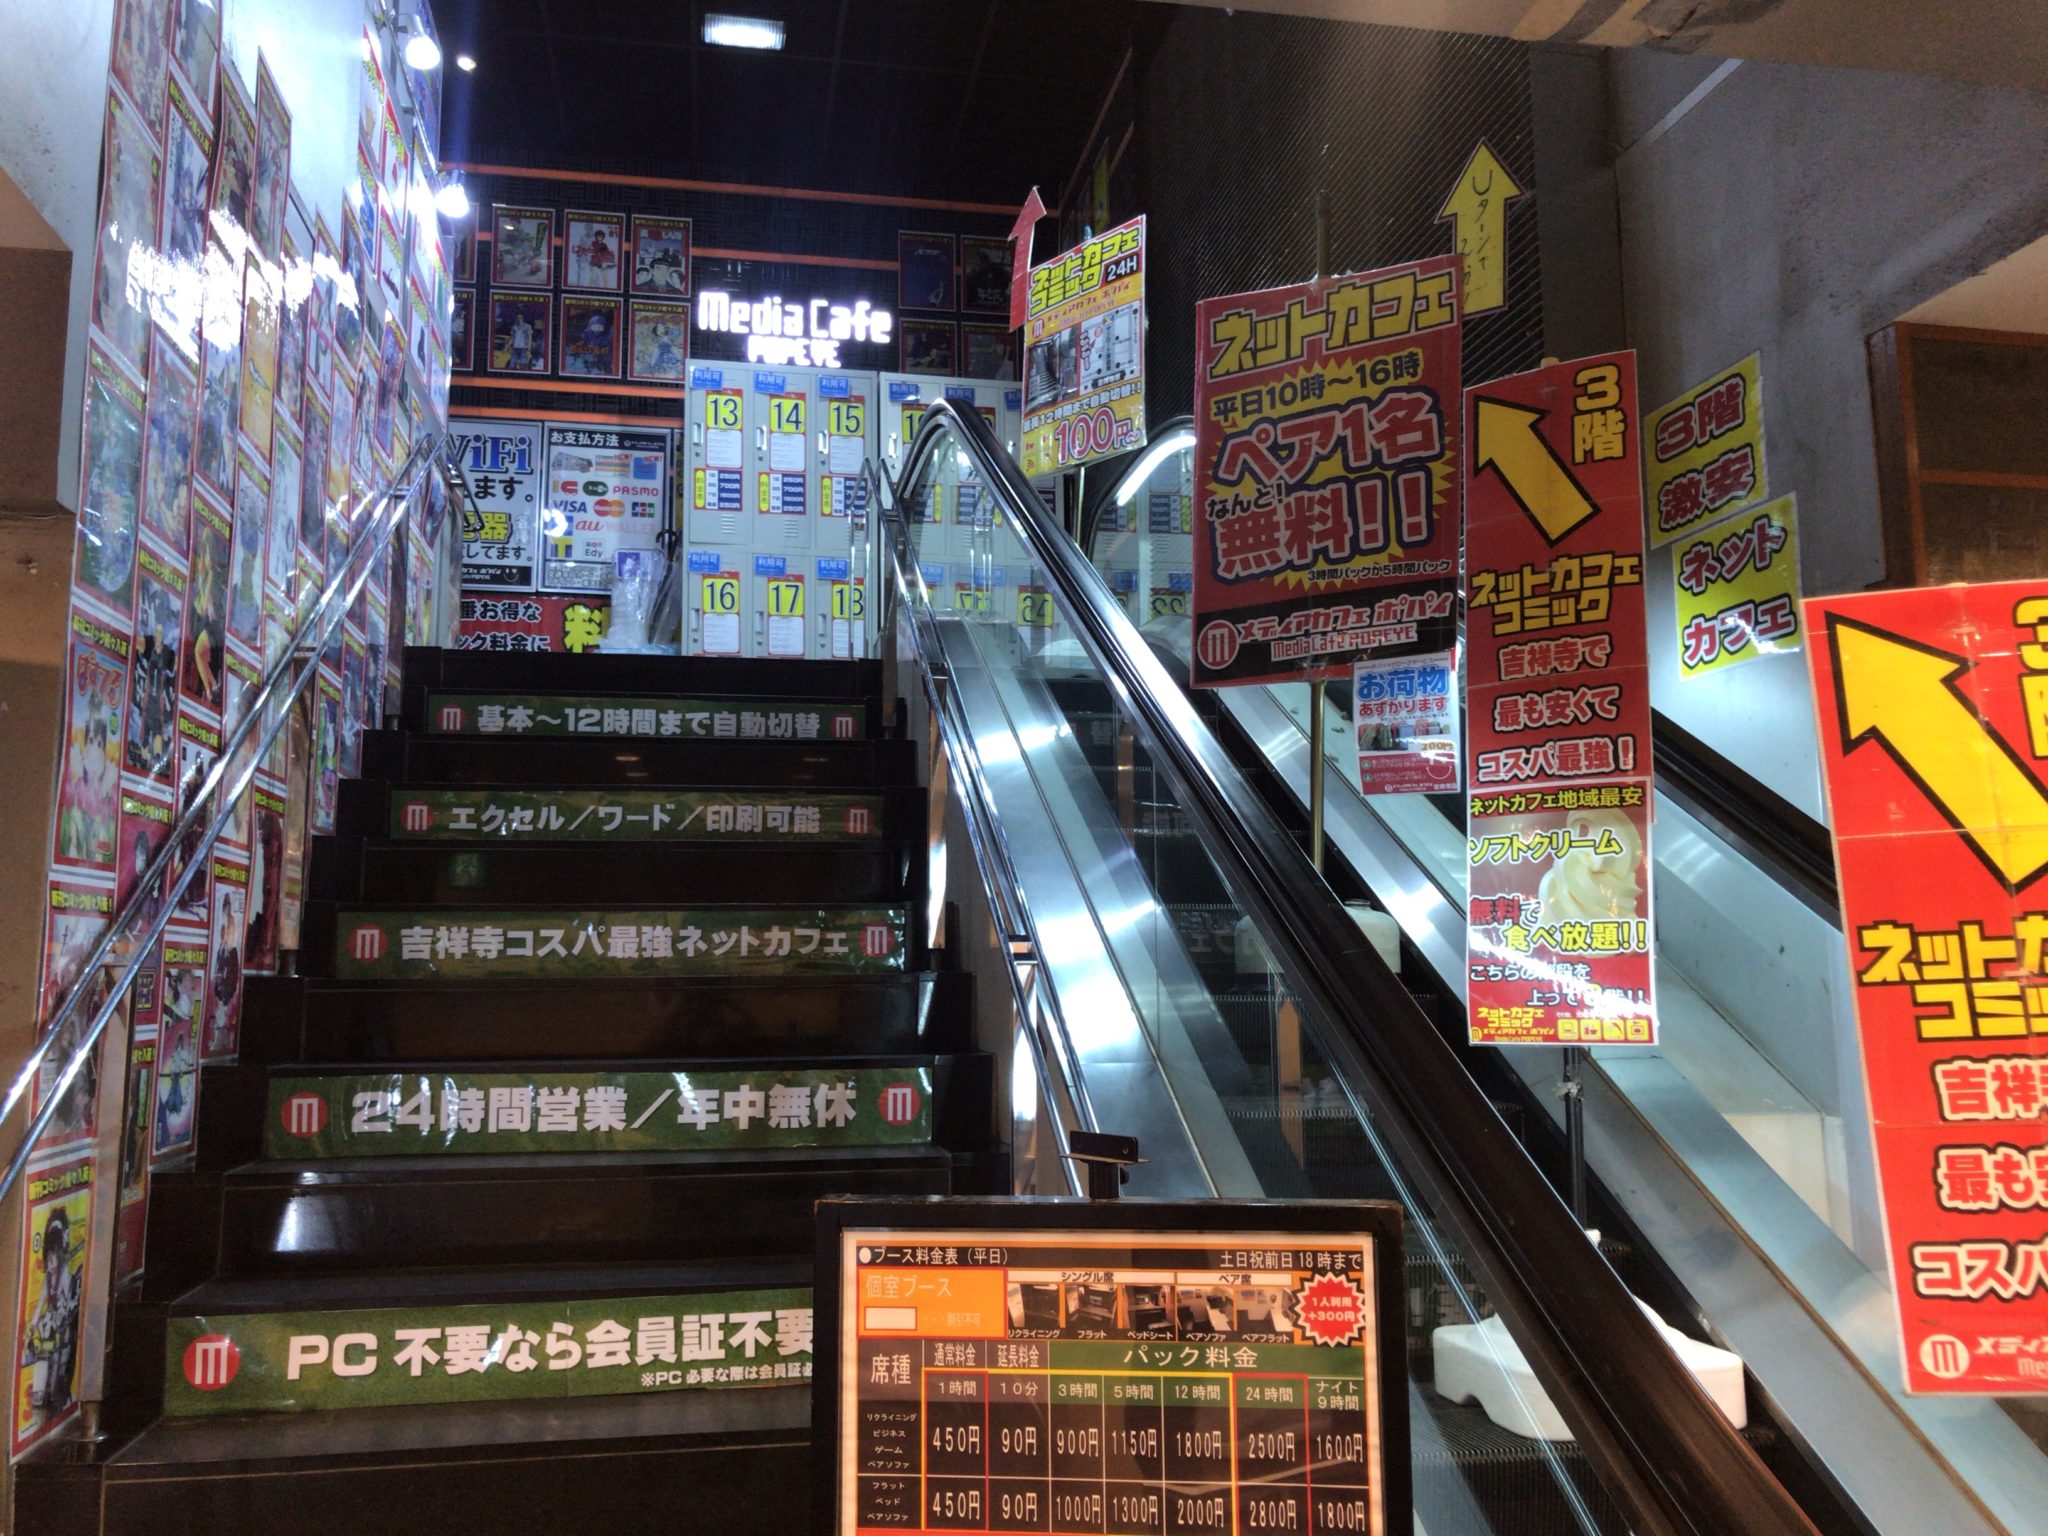 吉祥寺駅から徒歩3分 メディアカフェポパイ吉祥寺店をレポート 日本全国のネカフェ 漫画喫茶マップのヒマップ